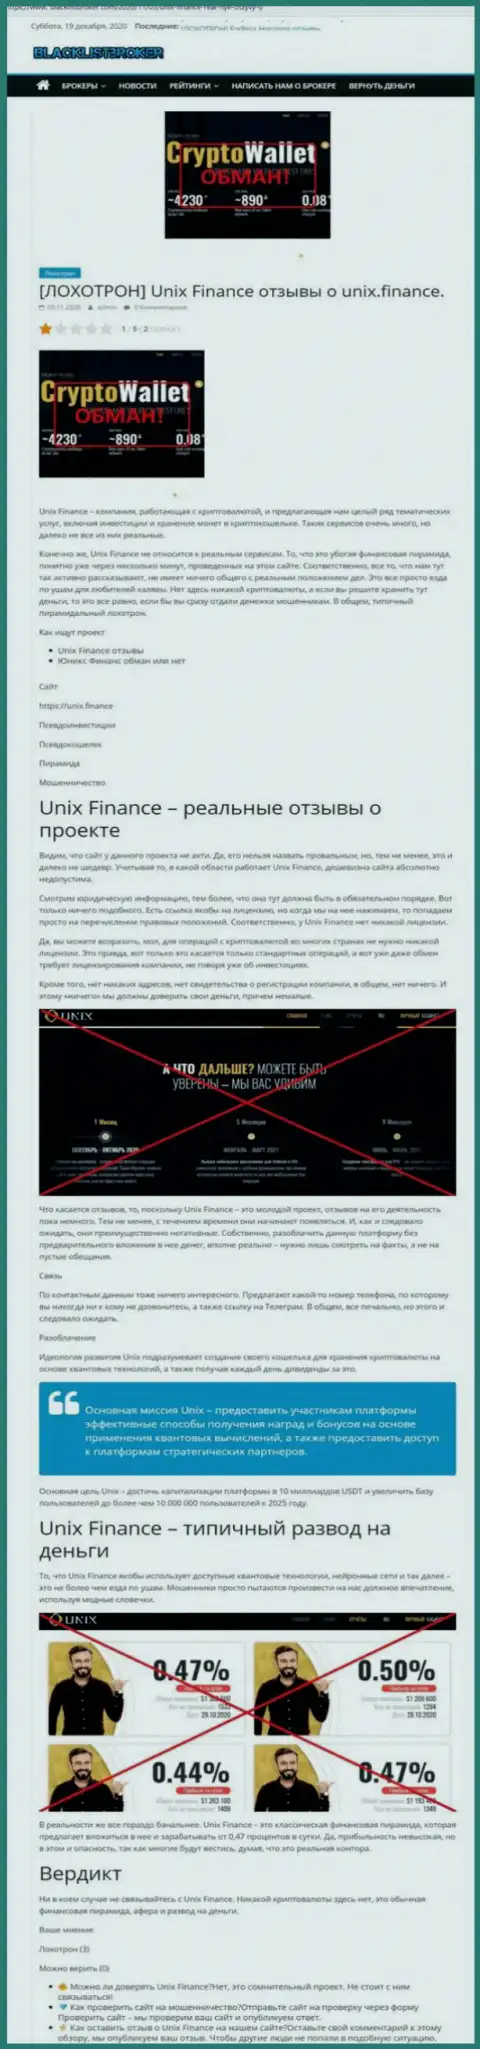 Unix Finance ЛОХОТРОНЯТ !!! Примеры противозаконных манипуляций